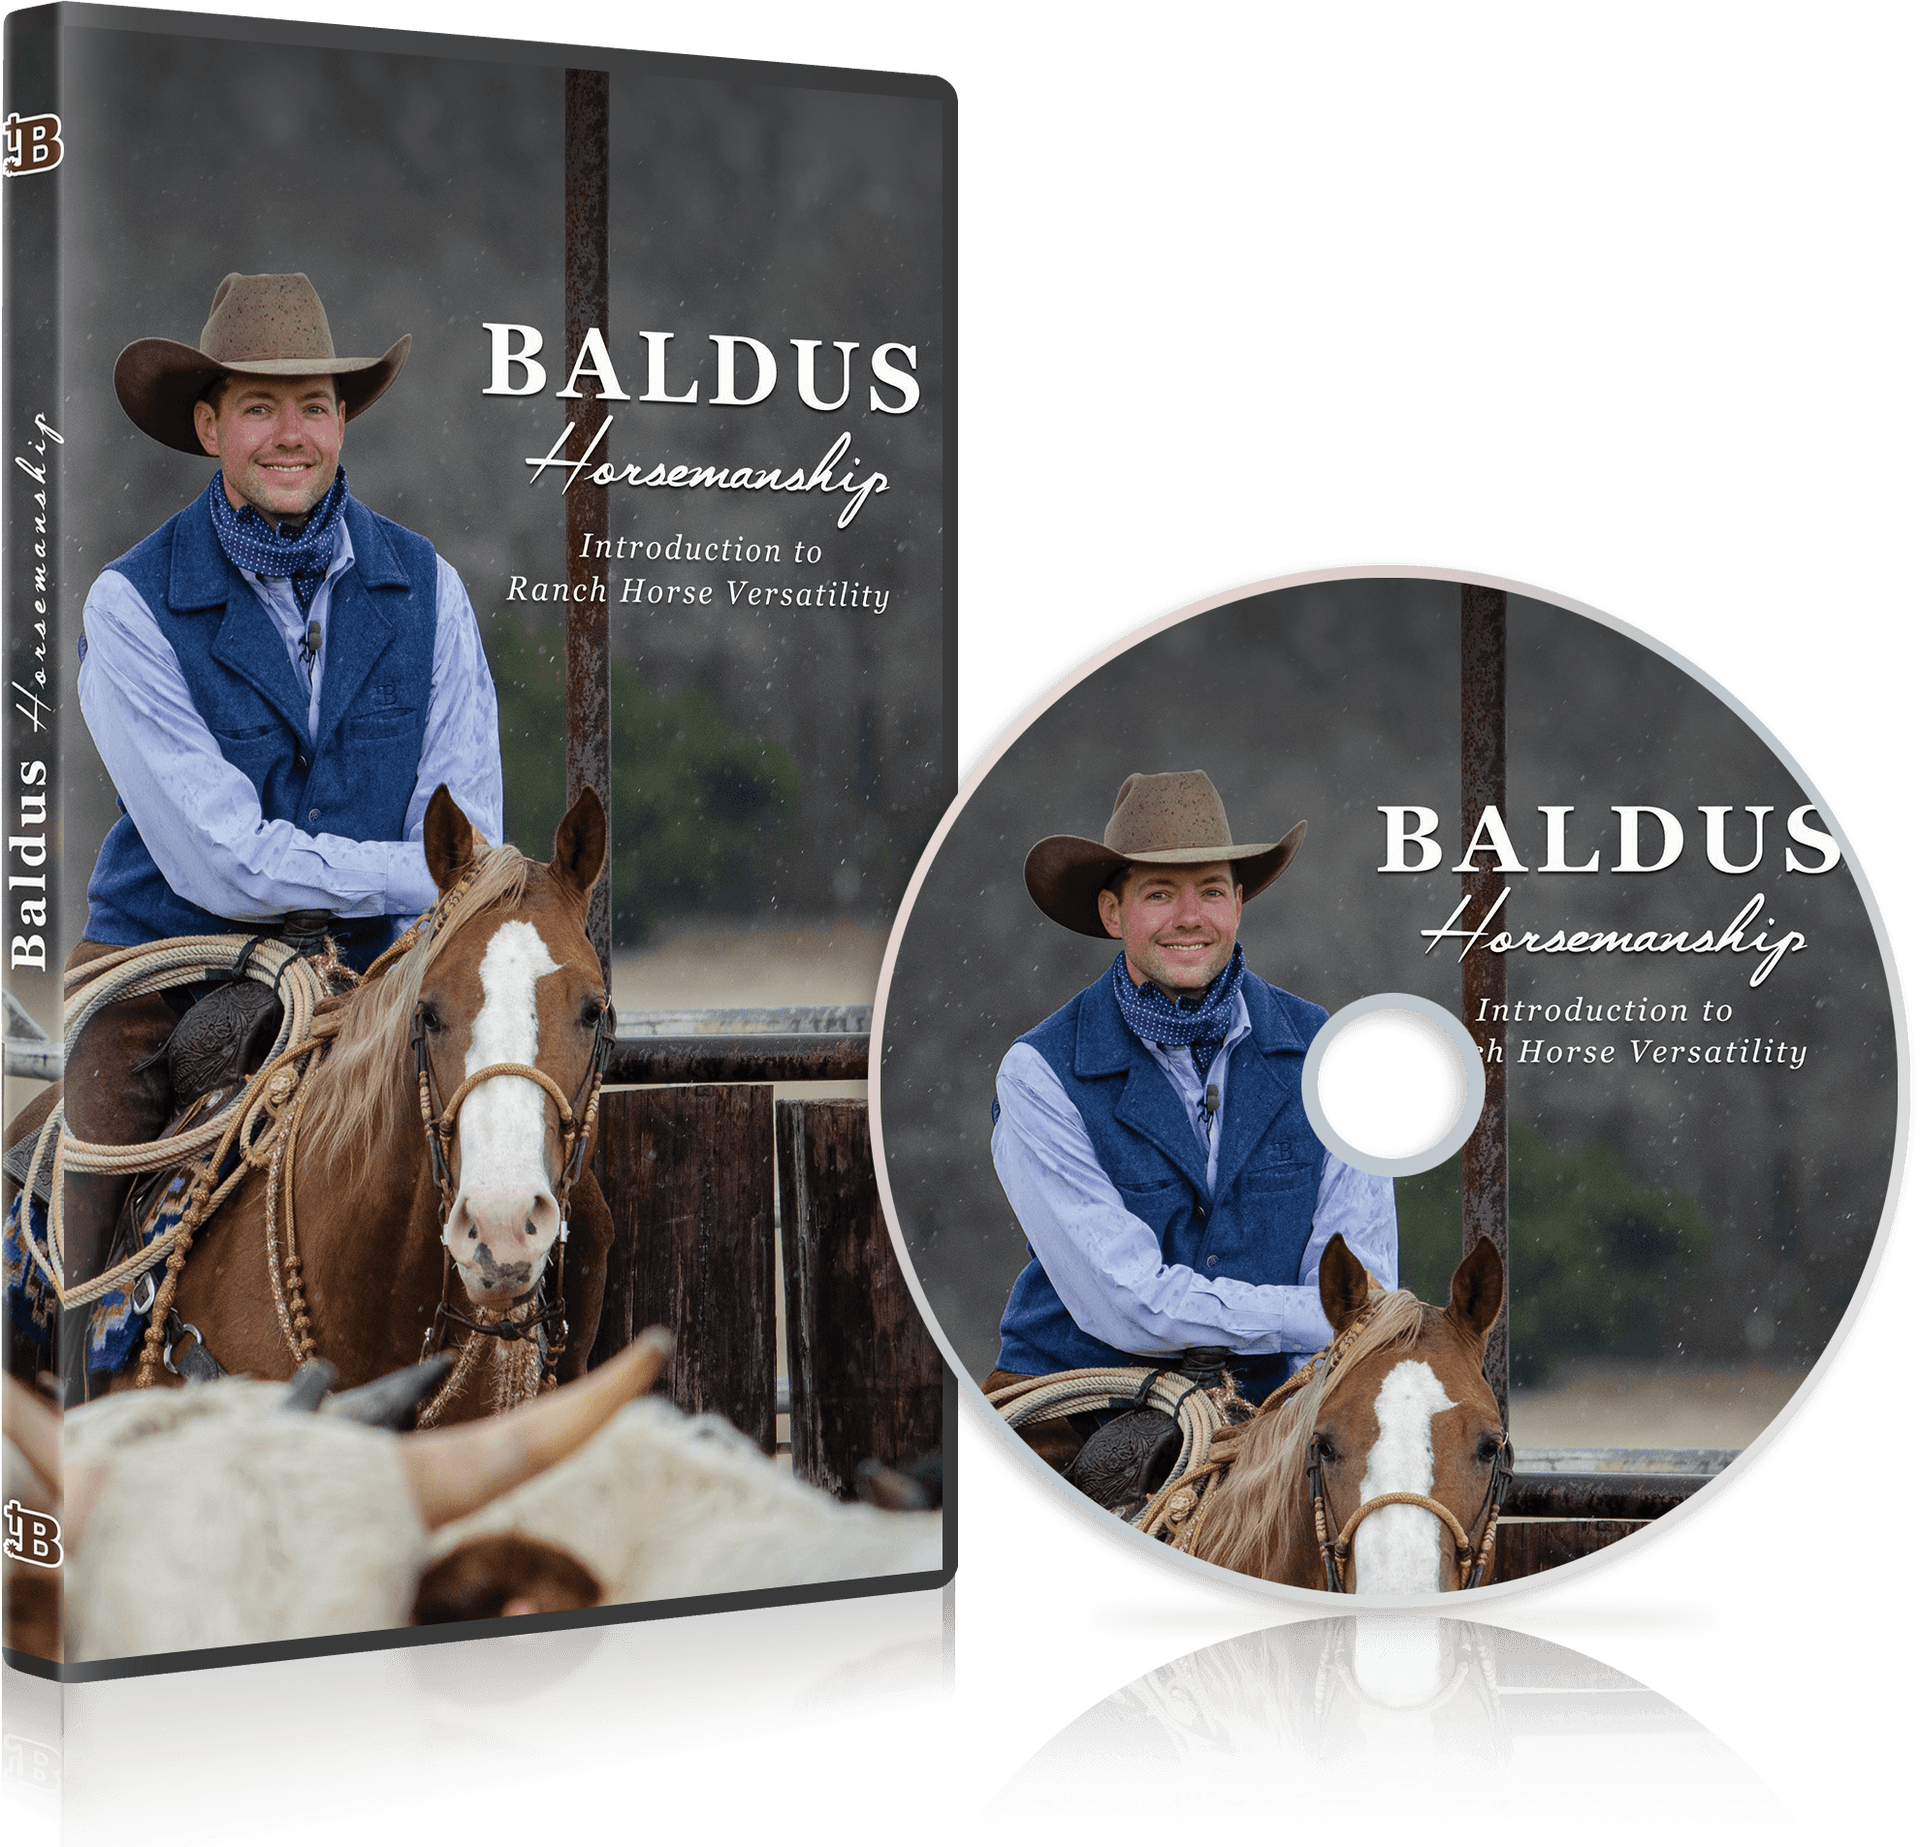 Baldus Horsemanship D V D Coverand Disc PNG